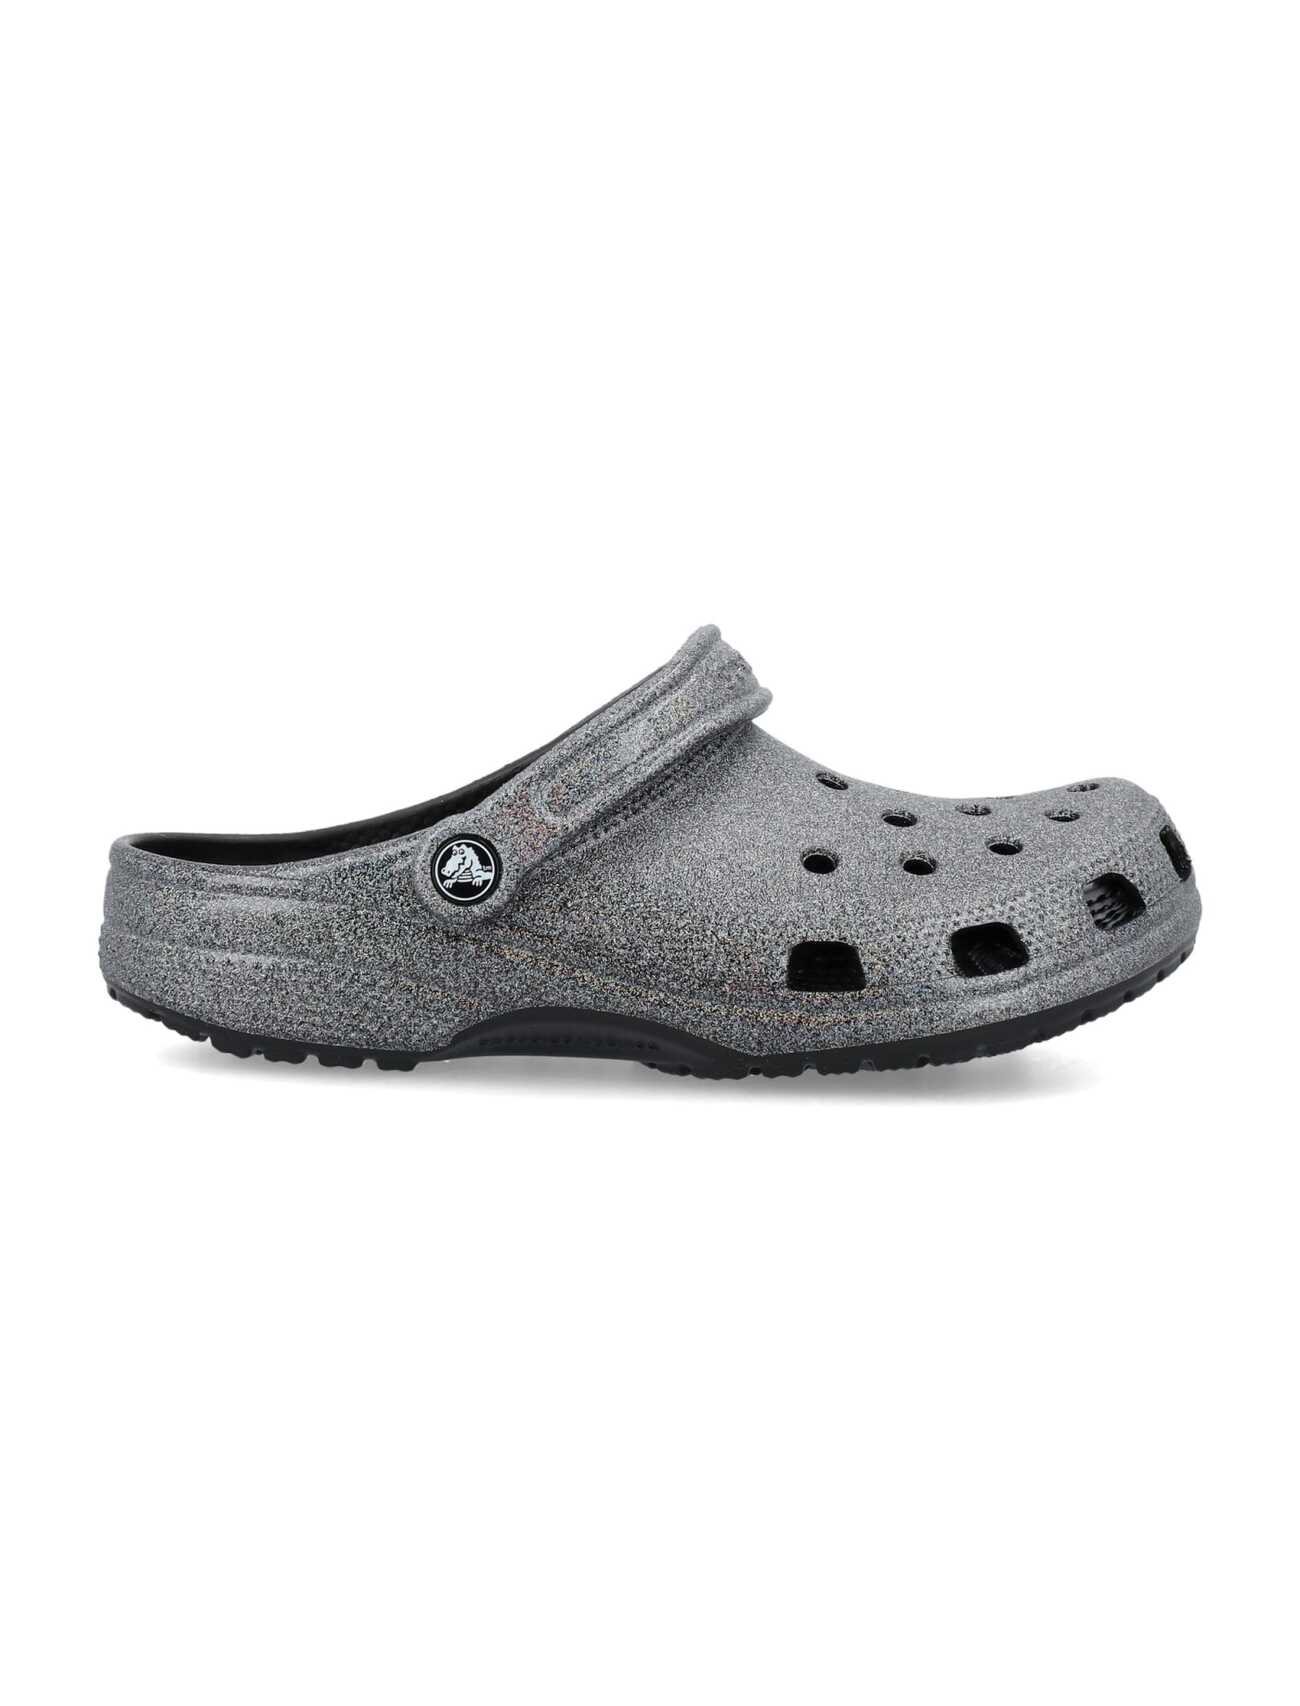 Crocs Classic Glitter Ii Clog in black